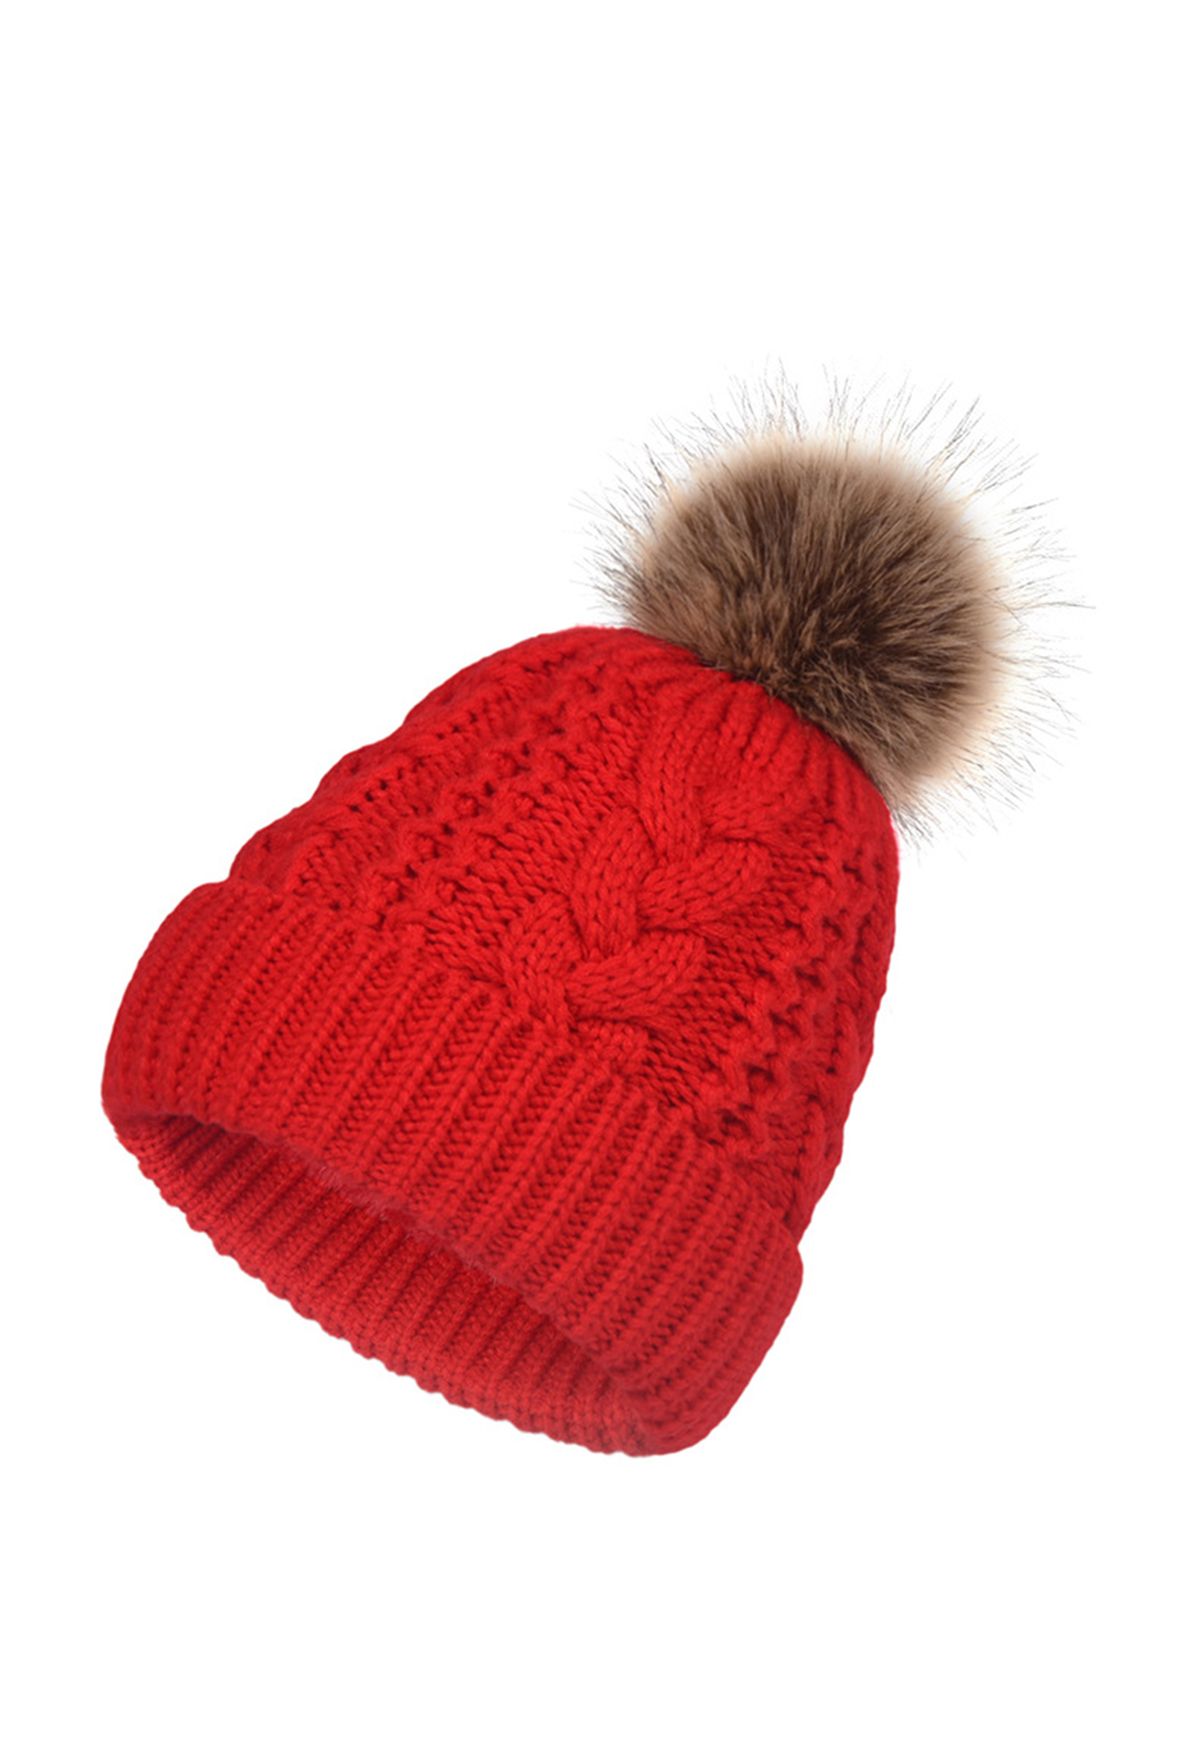 قبعة بوم بوم مزينة بضفيرة متماسكة باللون الأحمر